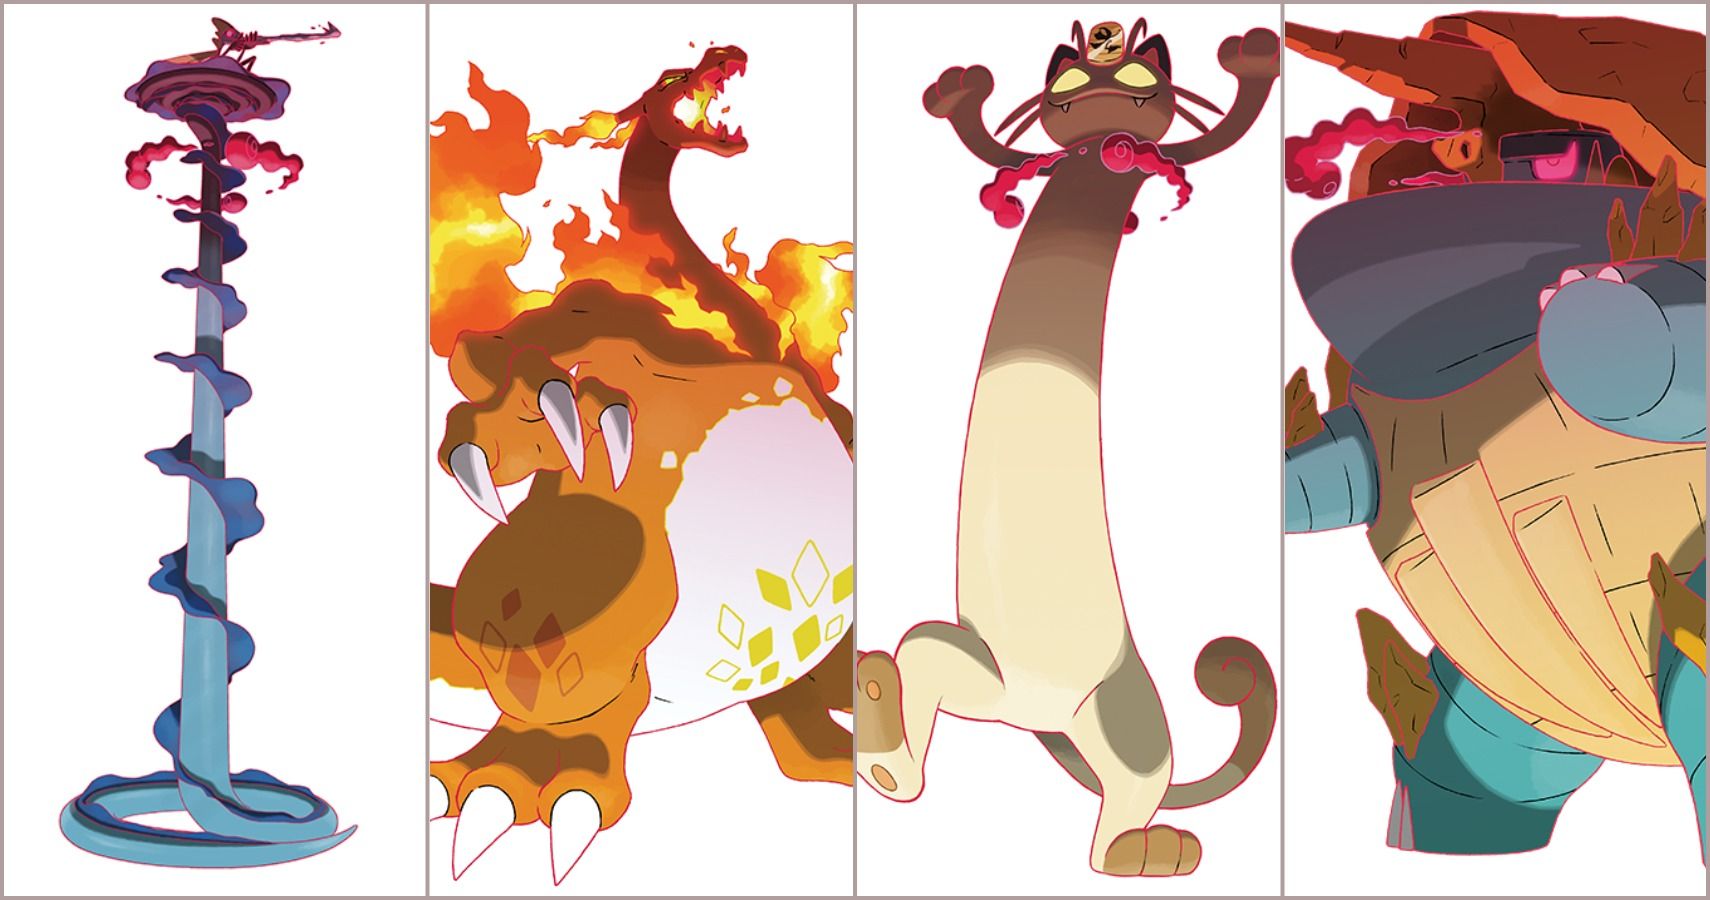 Pokémon: The Craziest Pokémon,